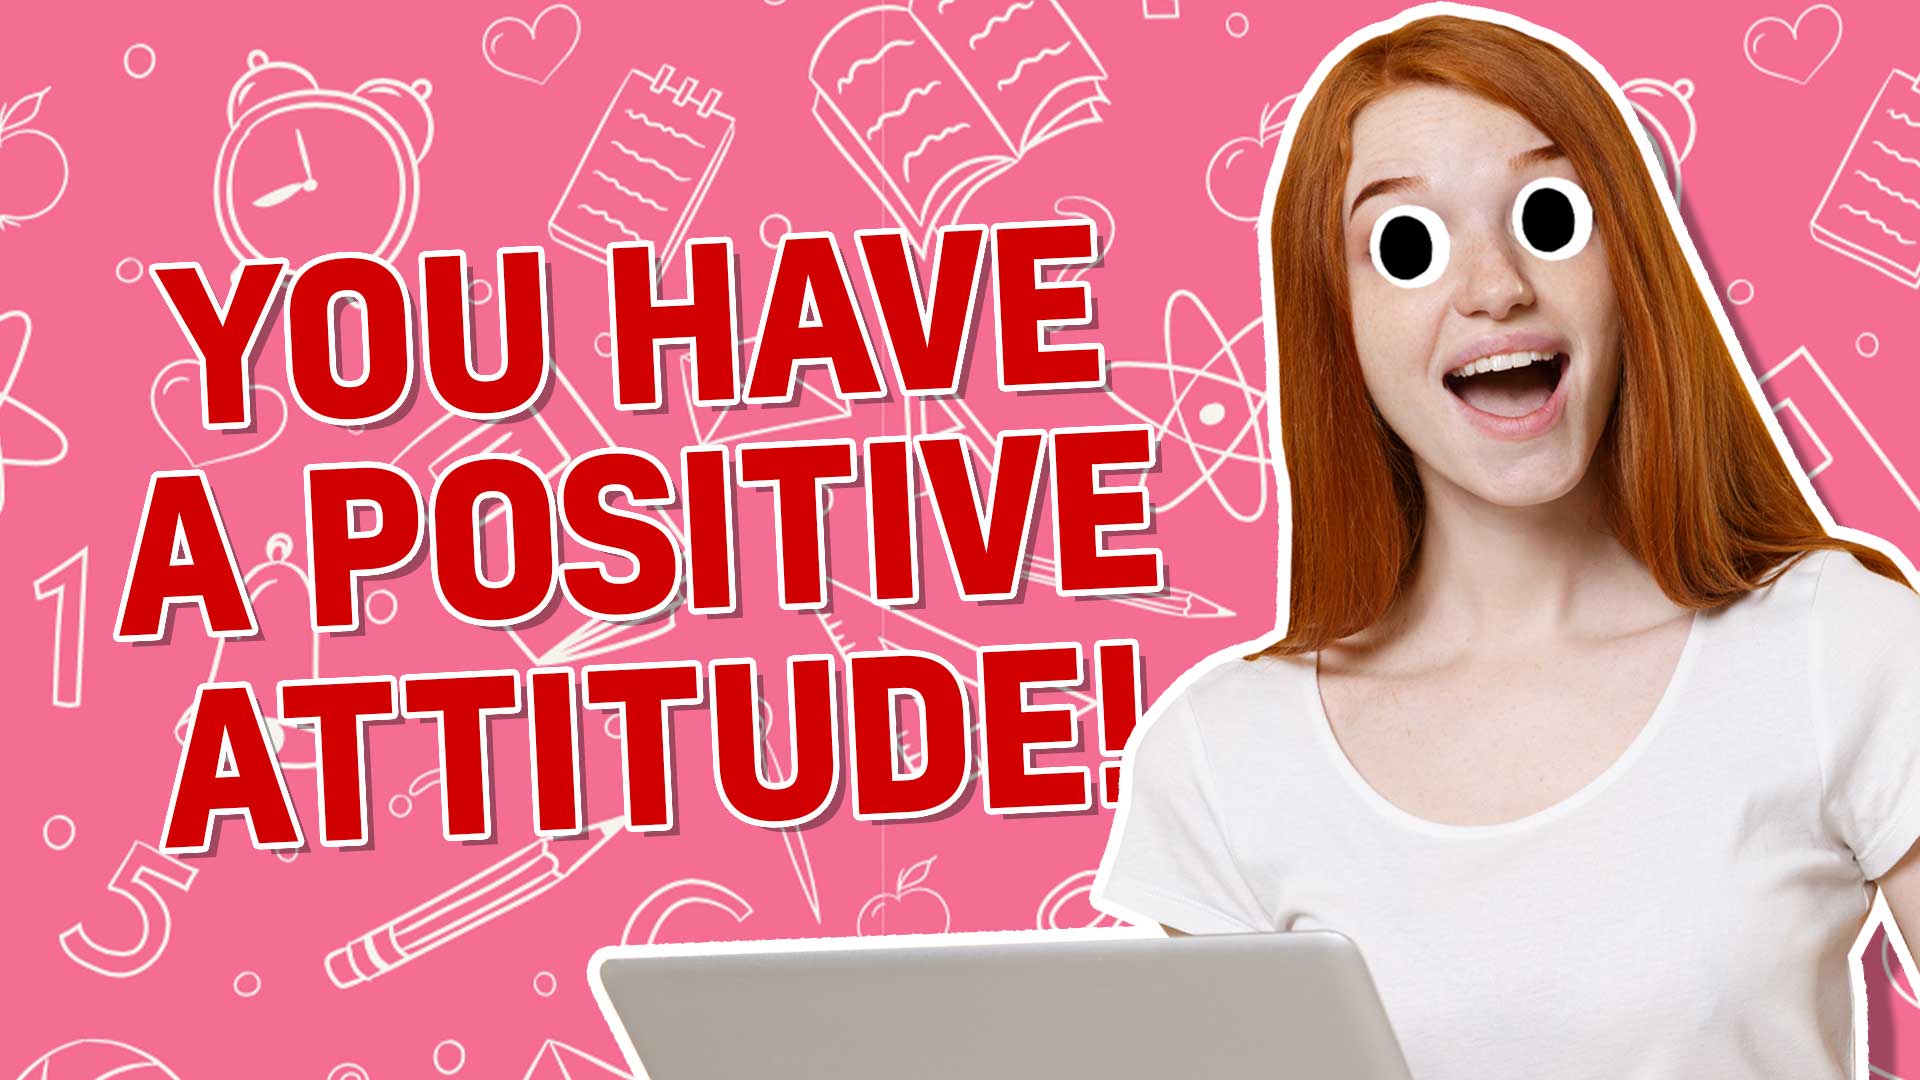 You have a positive attitude